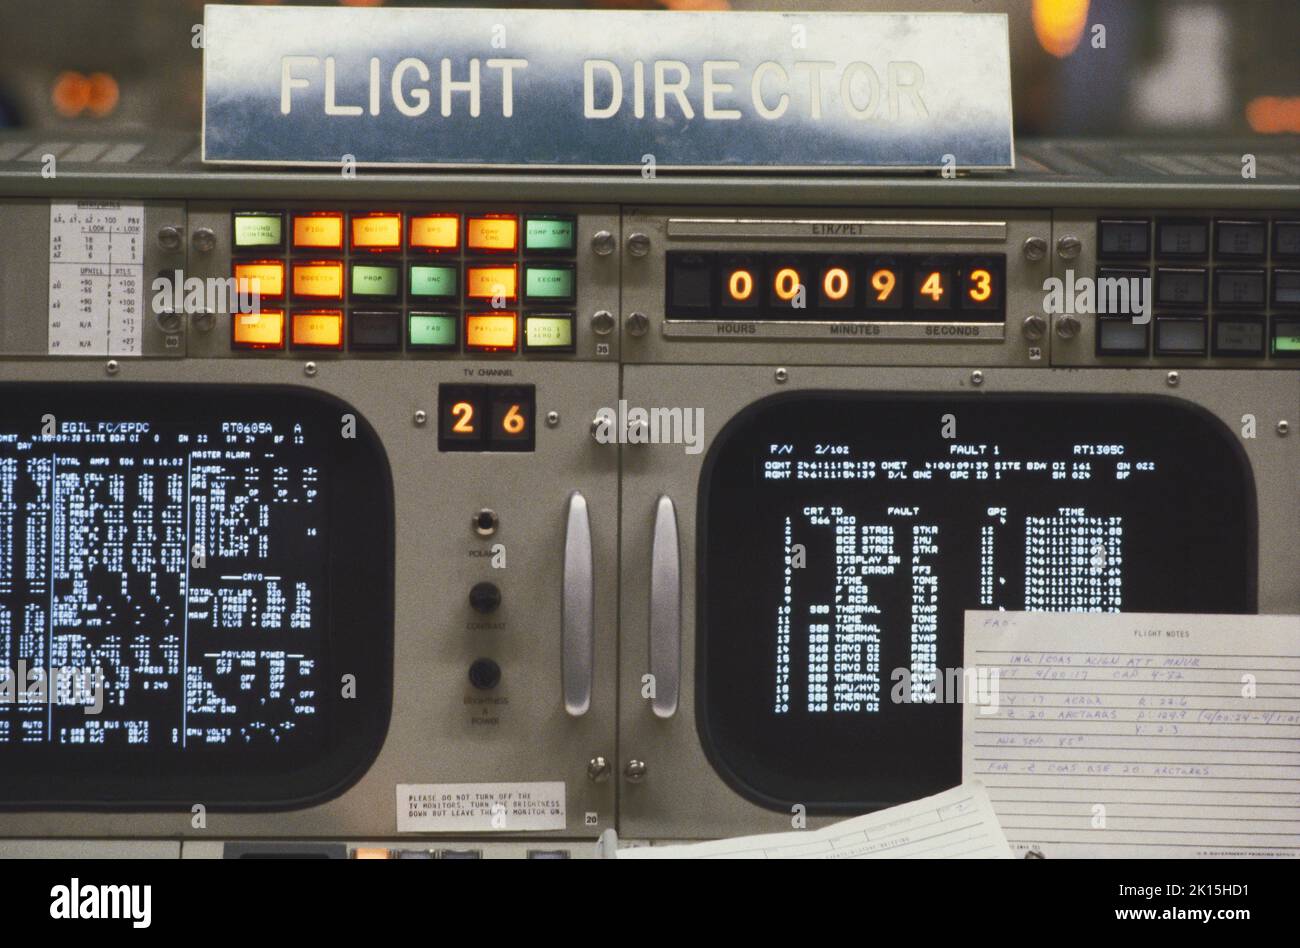 Uno sguardo alla sala di controllo della missione della NASA presso il Johnson Space Center, noto anche per il suo callsign, "Houston". Qui, un'occhiata più da vicino ai video visualizzati sulla console del Flight Director, durante una simulazione di una missione spaziale. Foto circa 1985. Foto Stock